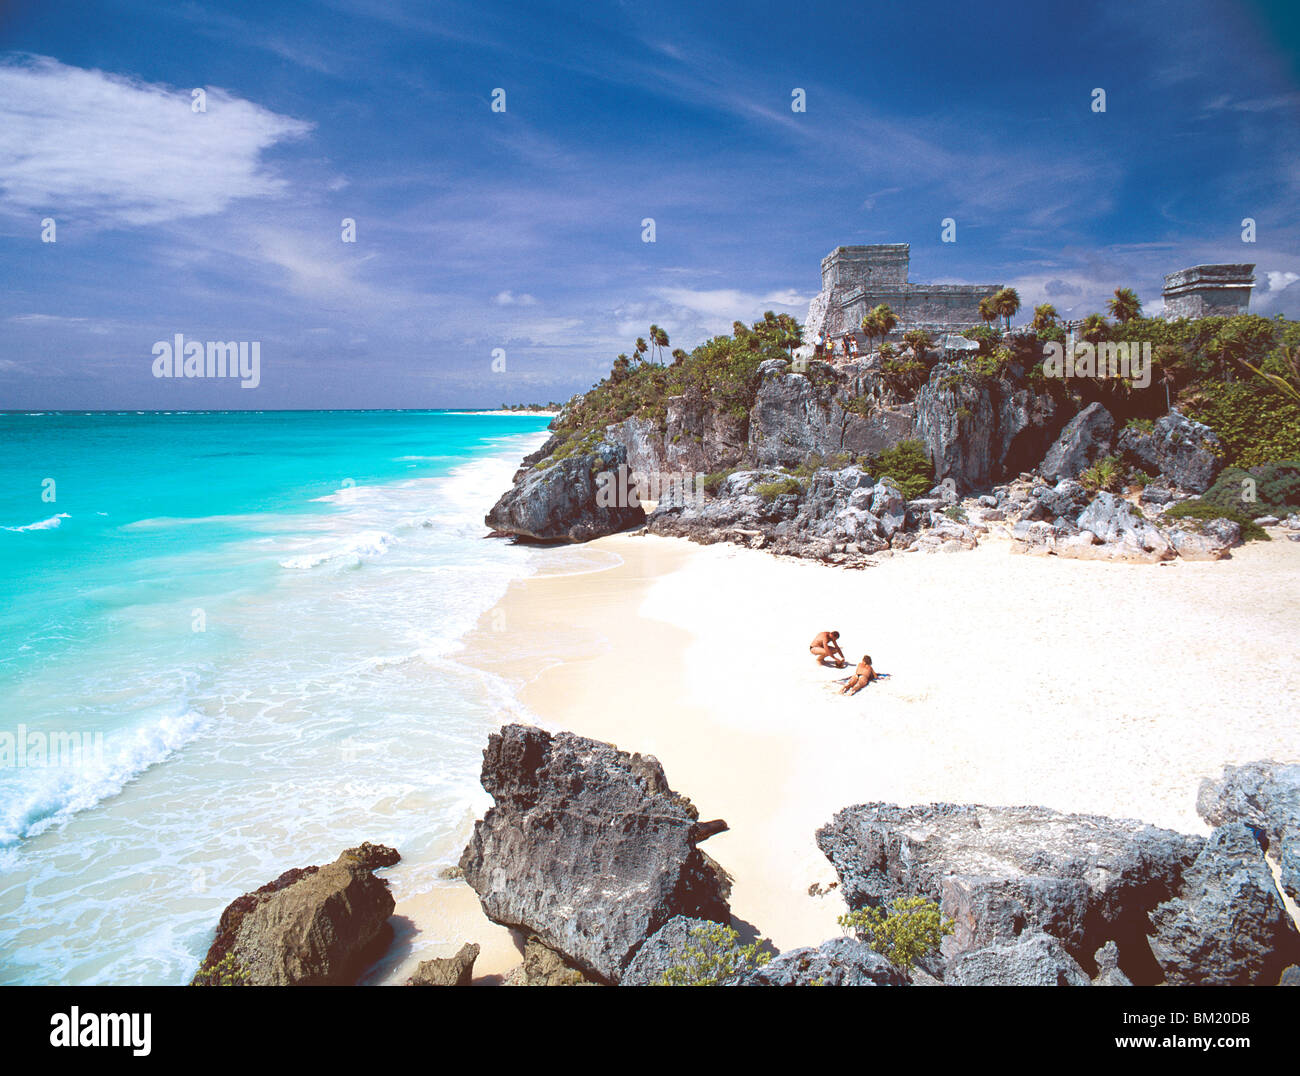 Maya-Ruinen mit Blick auf das Karibische Meer und den Strand von Tulum, Quintana Roo Zustand, Halbinsel Yucatan, Mexiko, Nordamerika Stockfoto